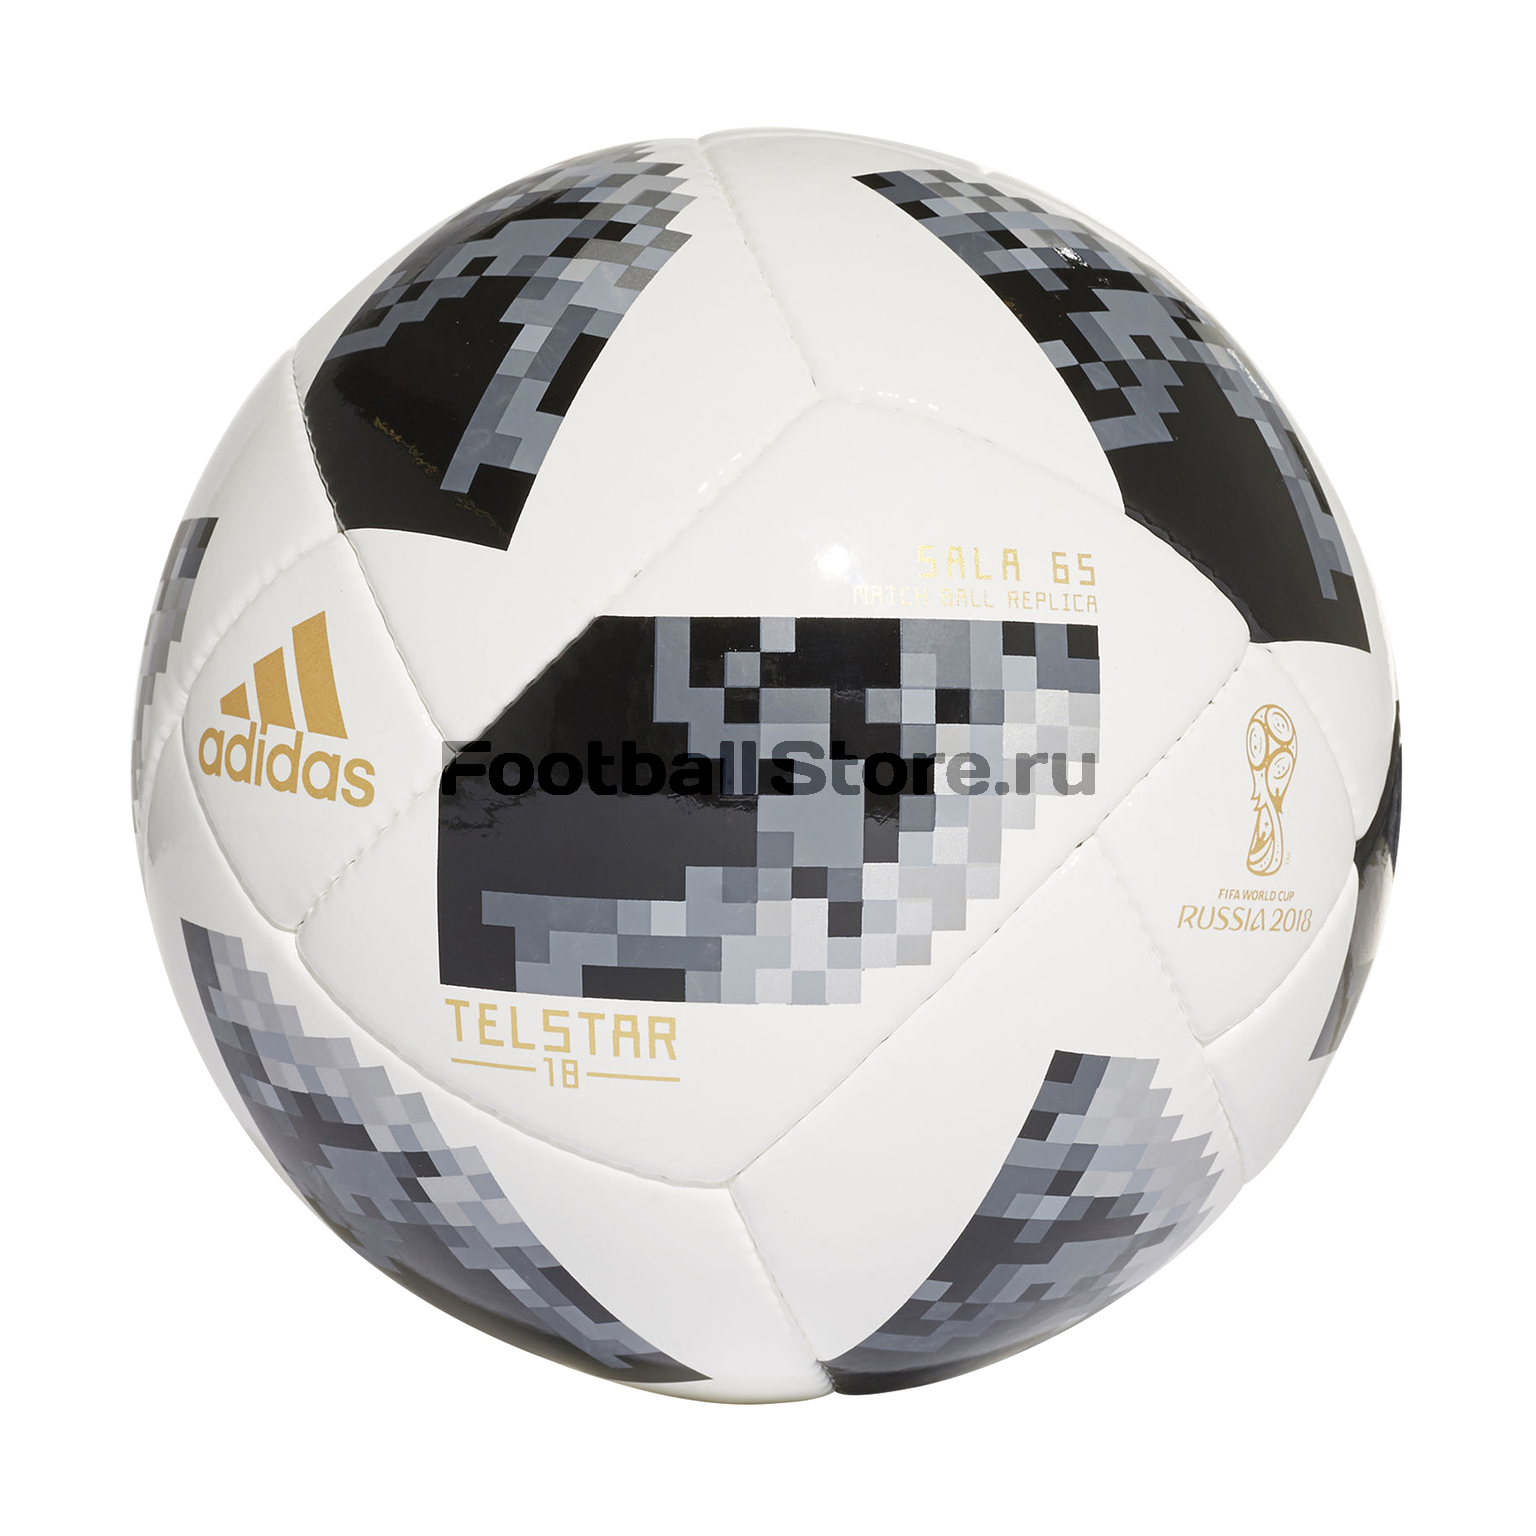 Футзальный мяч Adidas Telstar World Cup CE8146 